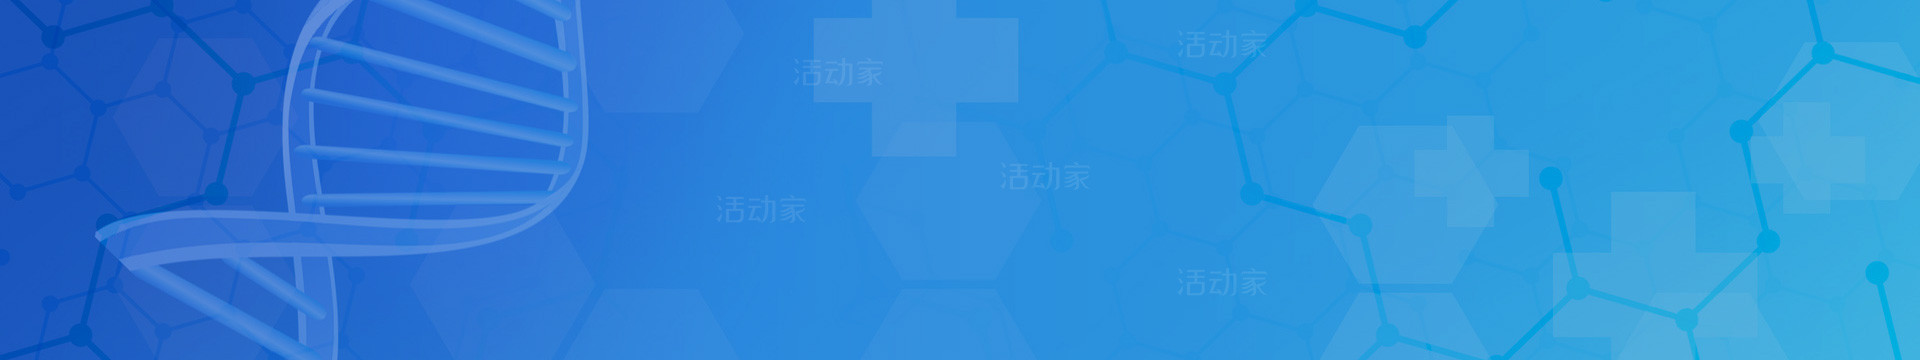 第六届国际生物医药（杭州）创新峰会